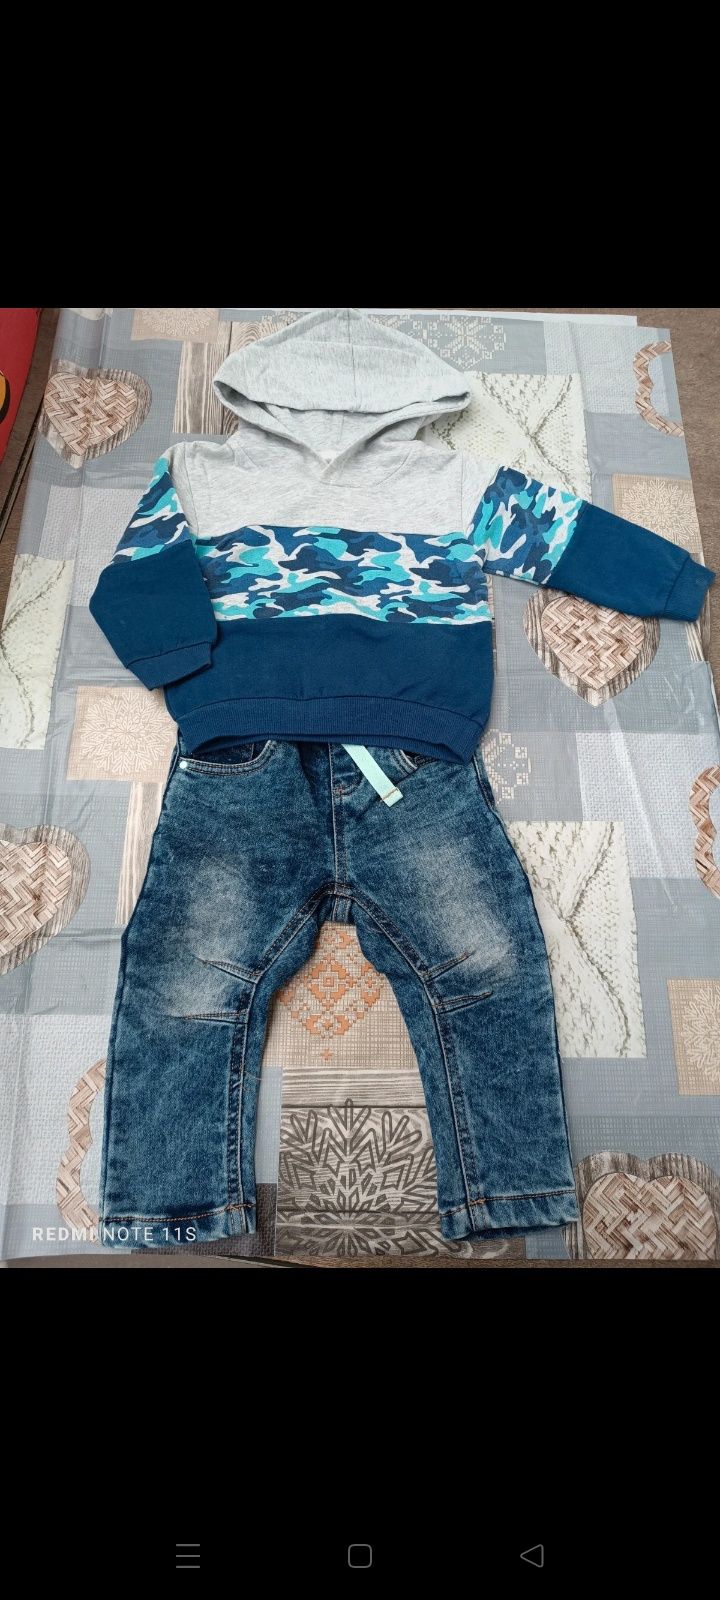 Zestaw niemowlęcy r 80 komplet dla chłopca spodnie jeansy i bluza